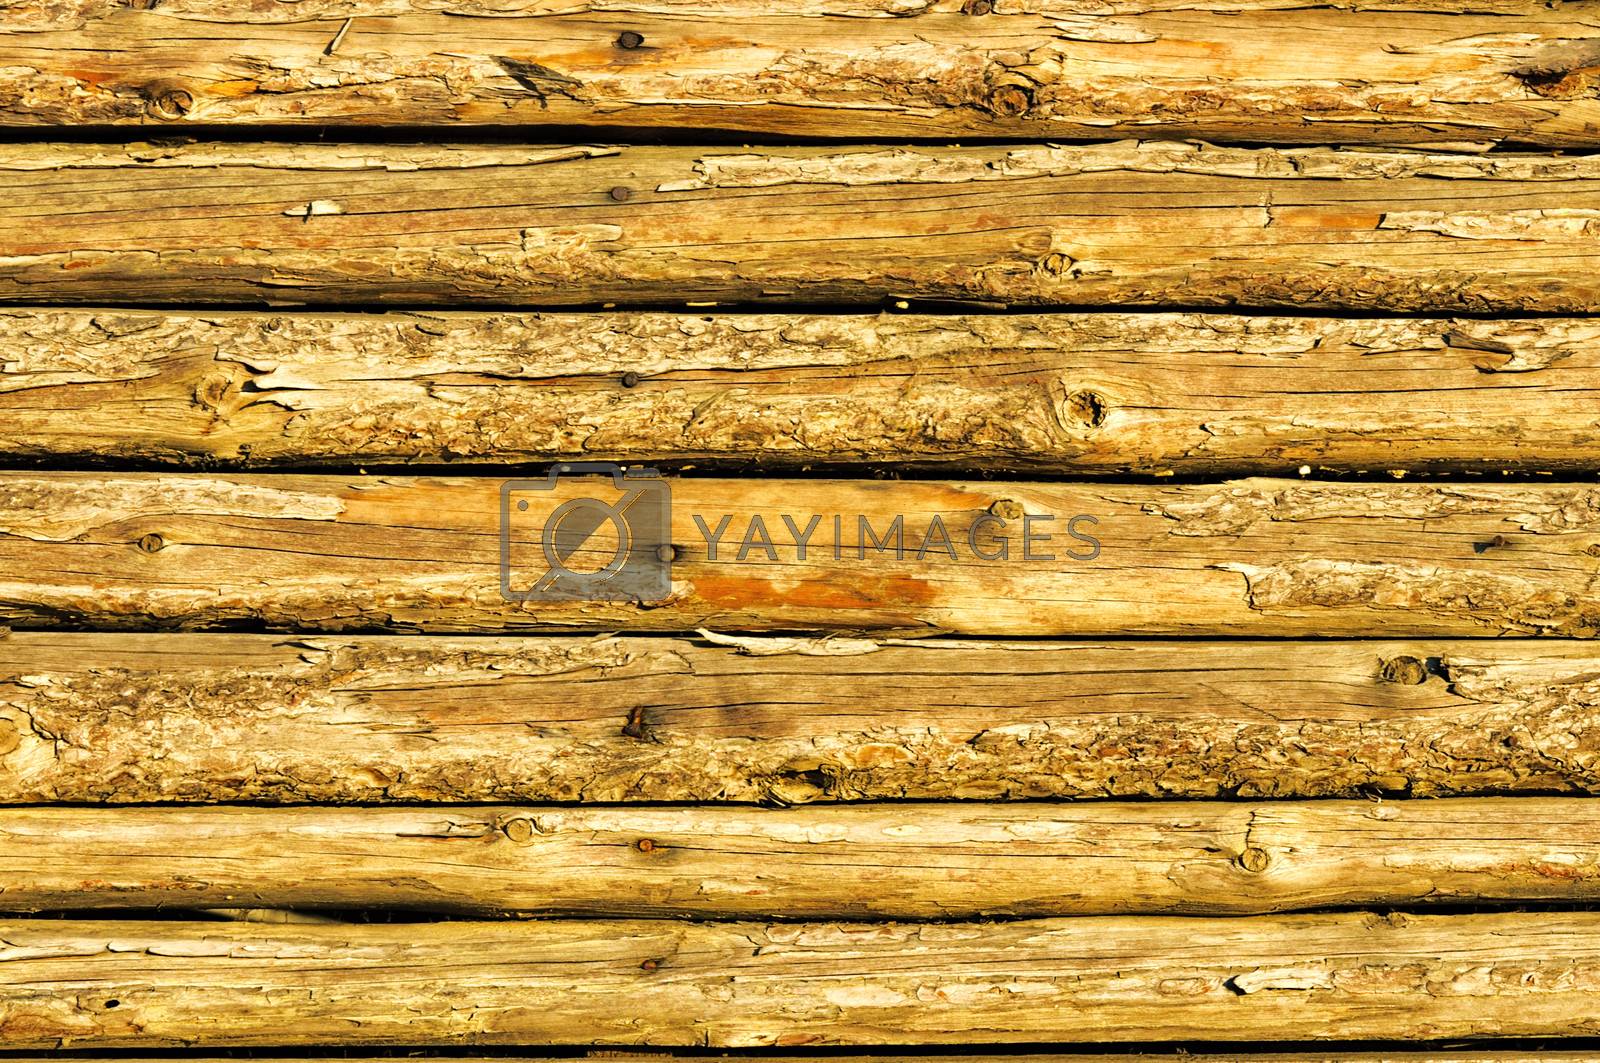 Wooden texture 